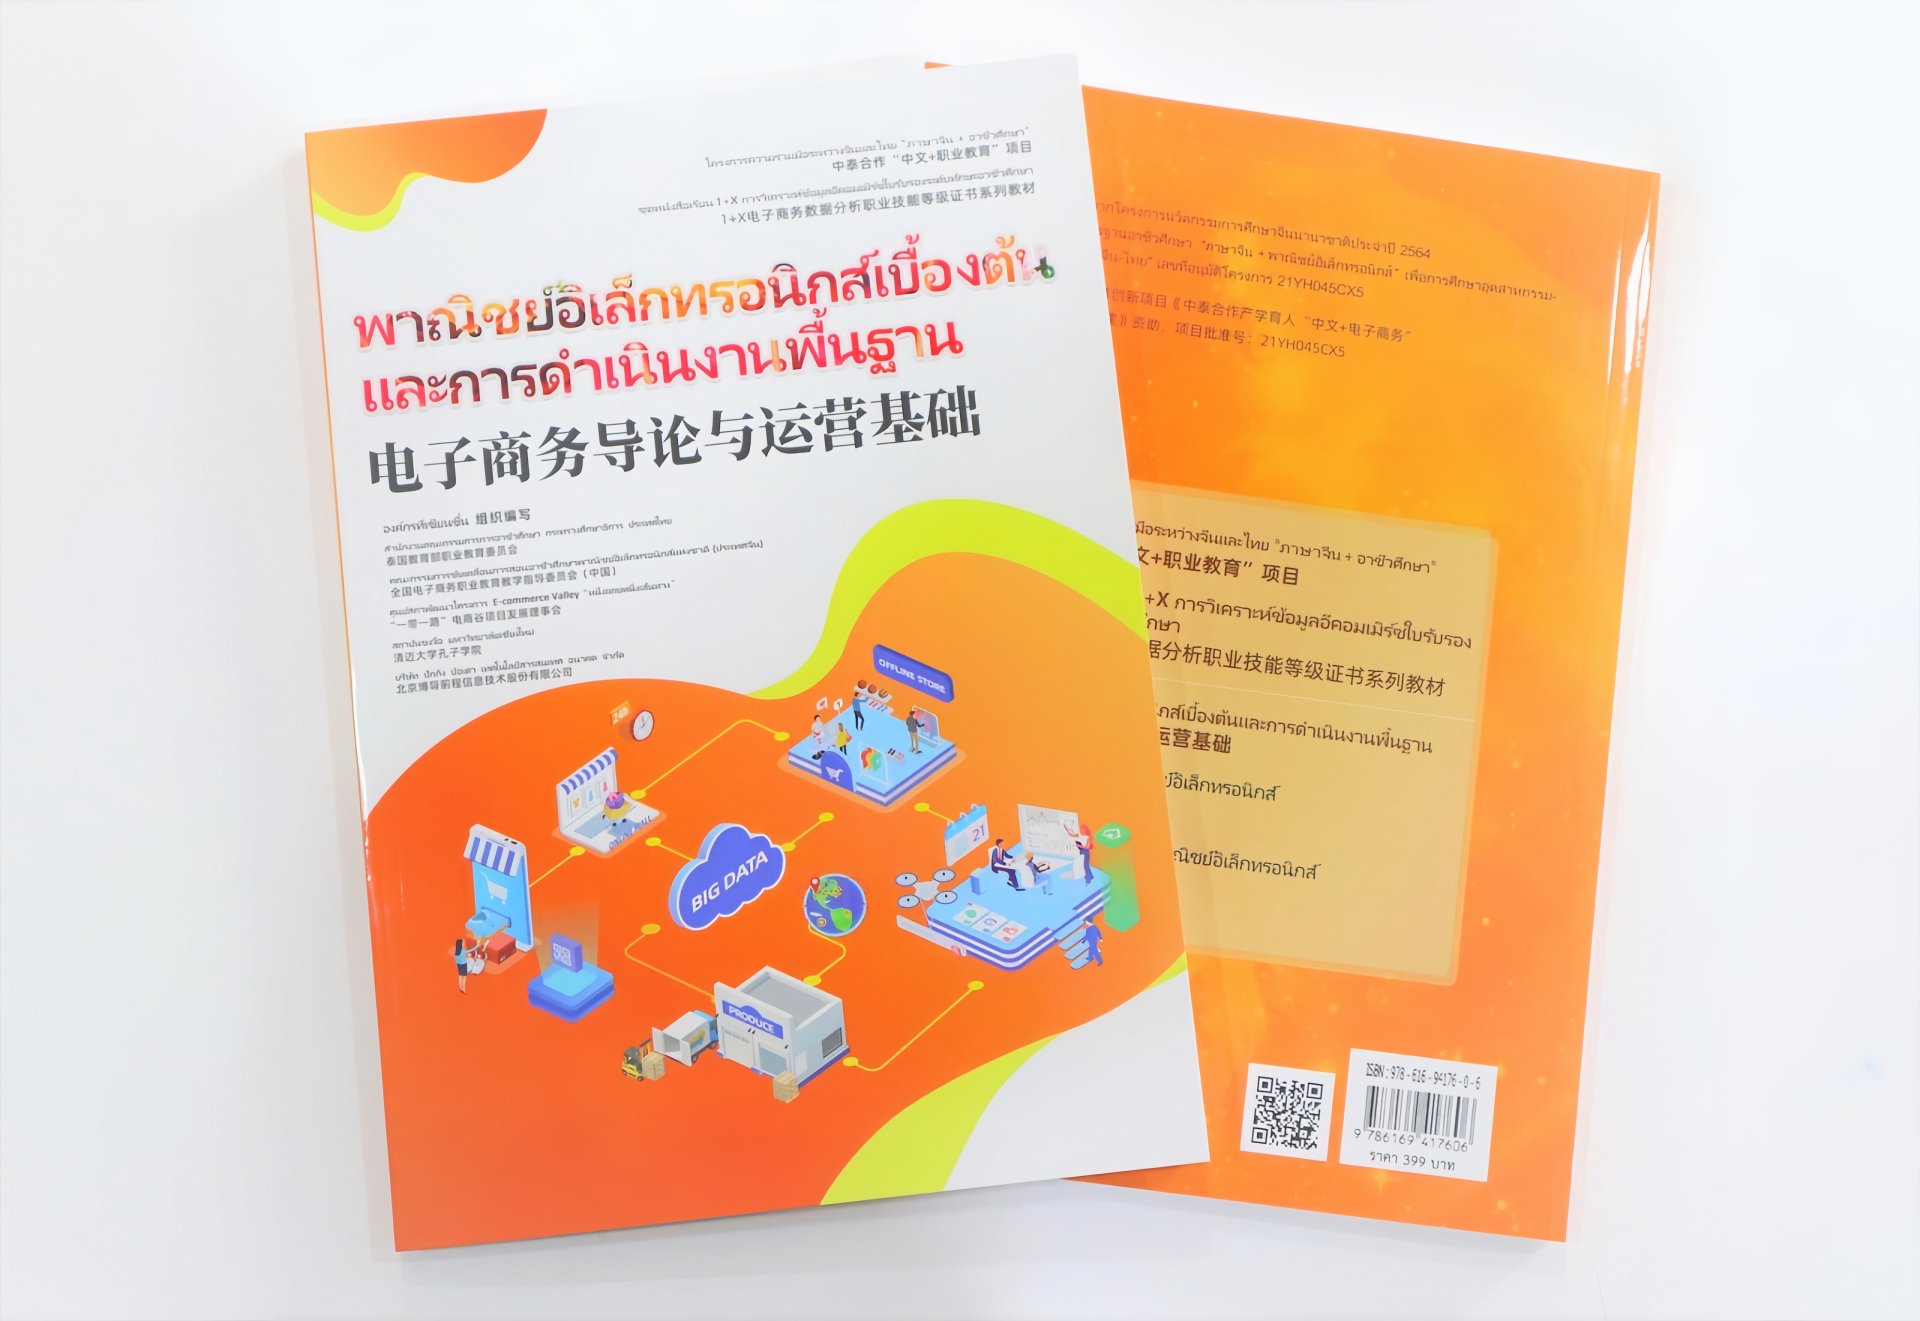 ความร่วมมือจีน-ไทย "ทักษะวิชาชีพจีน +" หนังสือเรียนชุดอีคอมเมิร์ซที่ตีพิมพ์ในประเทศไทย